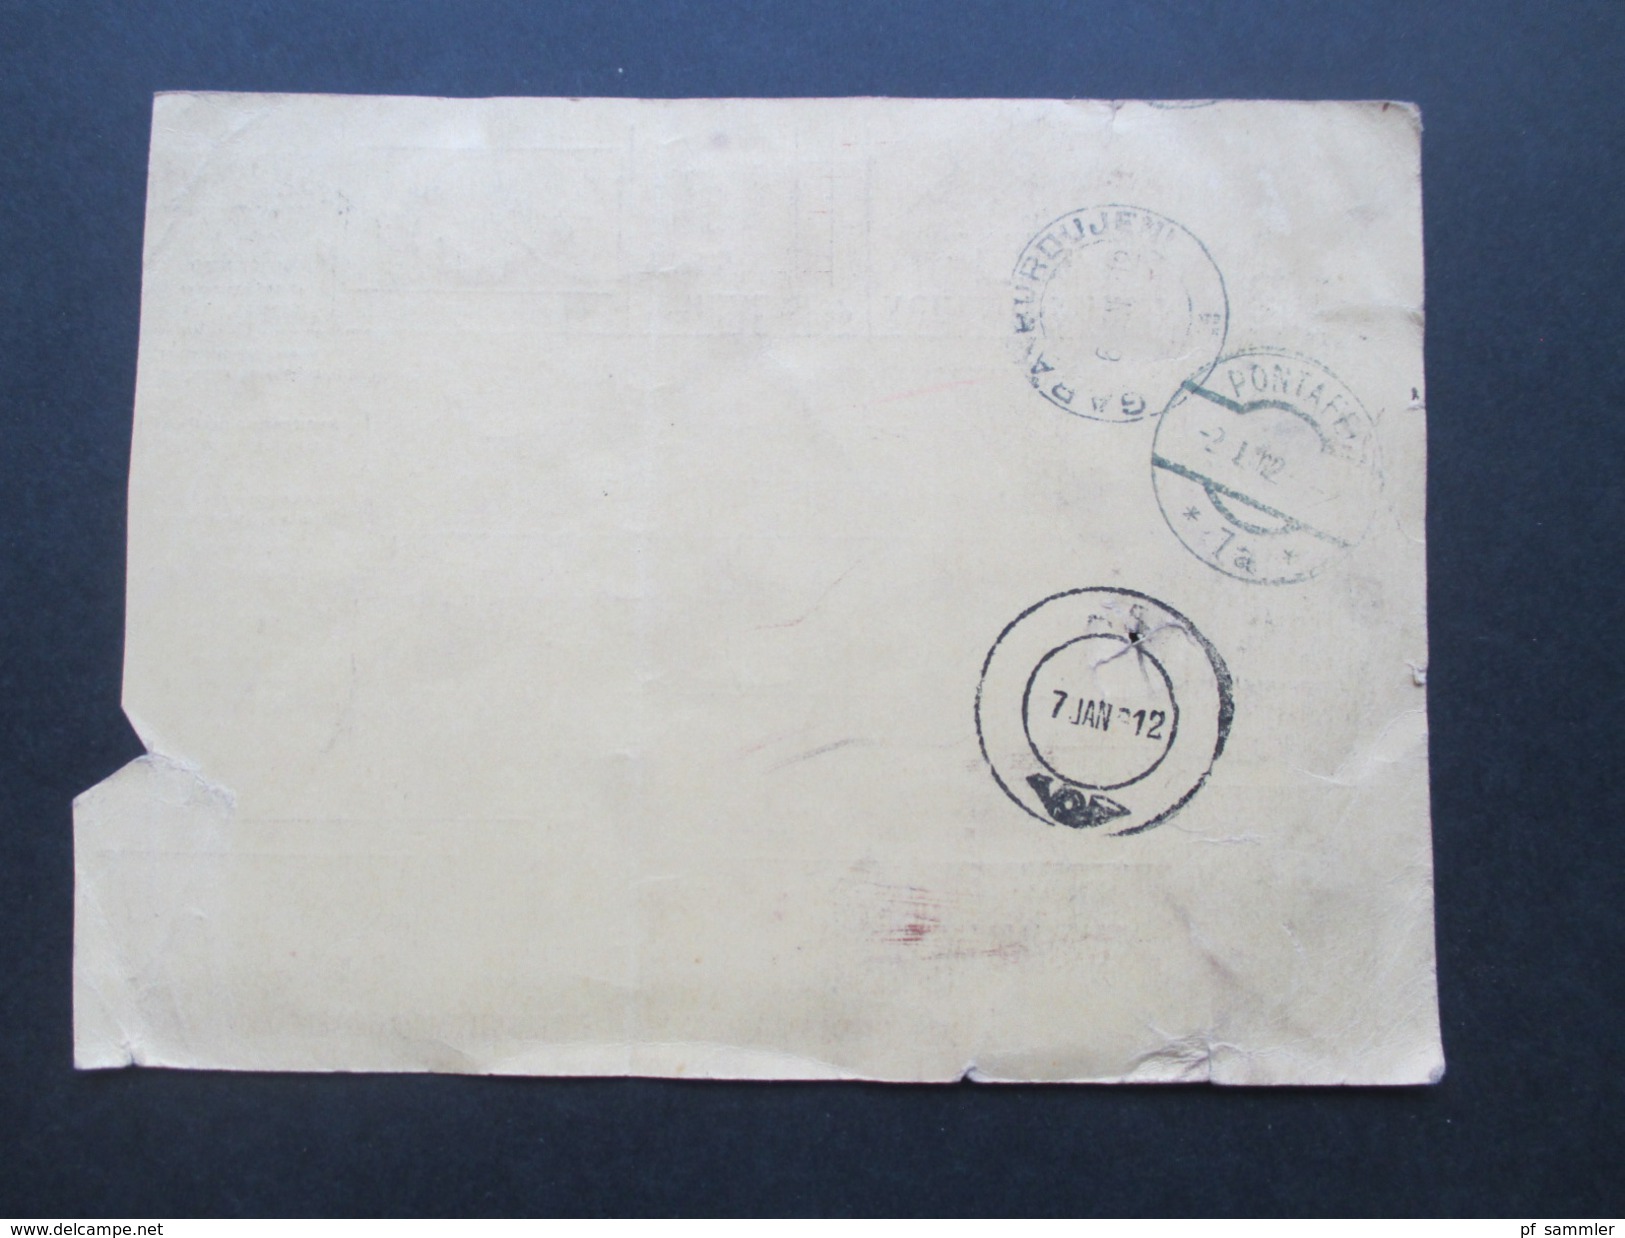 Italien 1911 Paketkarte Klebezettel: Italien über Pontafel Zollgut zu stellen in Itzkany. Ufizio italiano di uscita